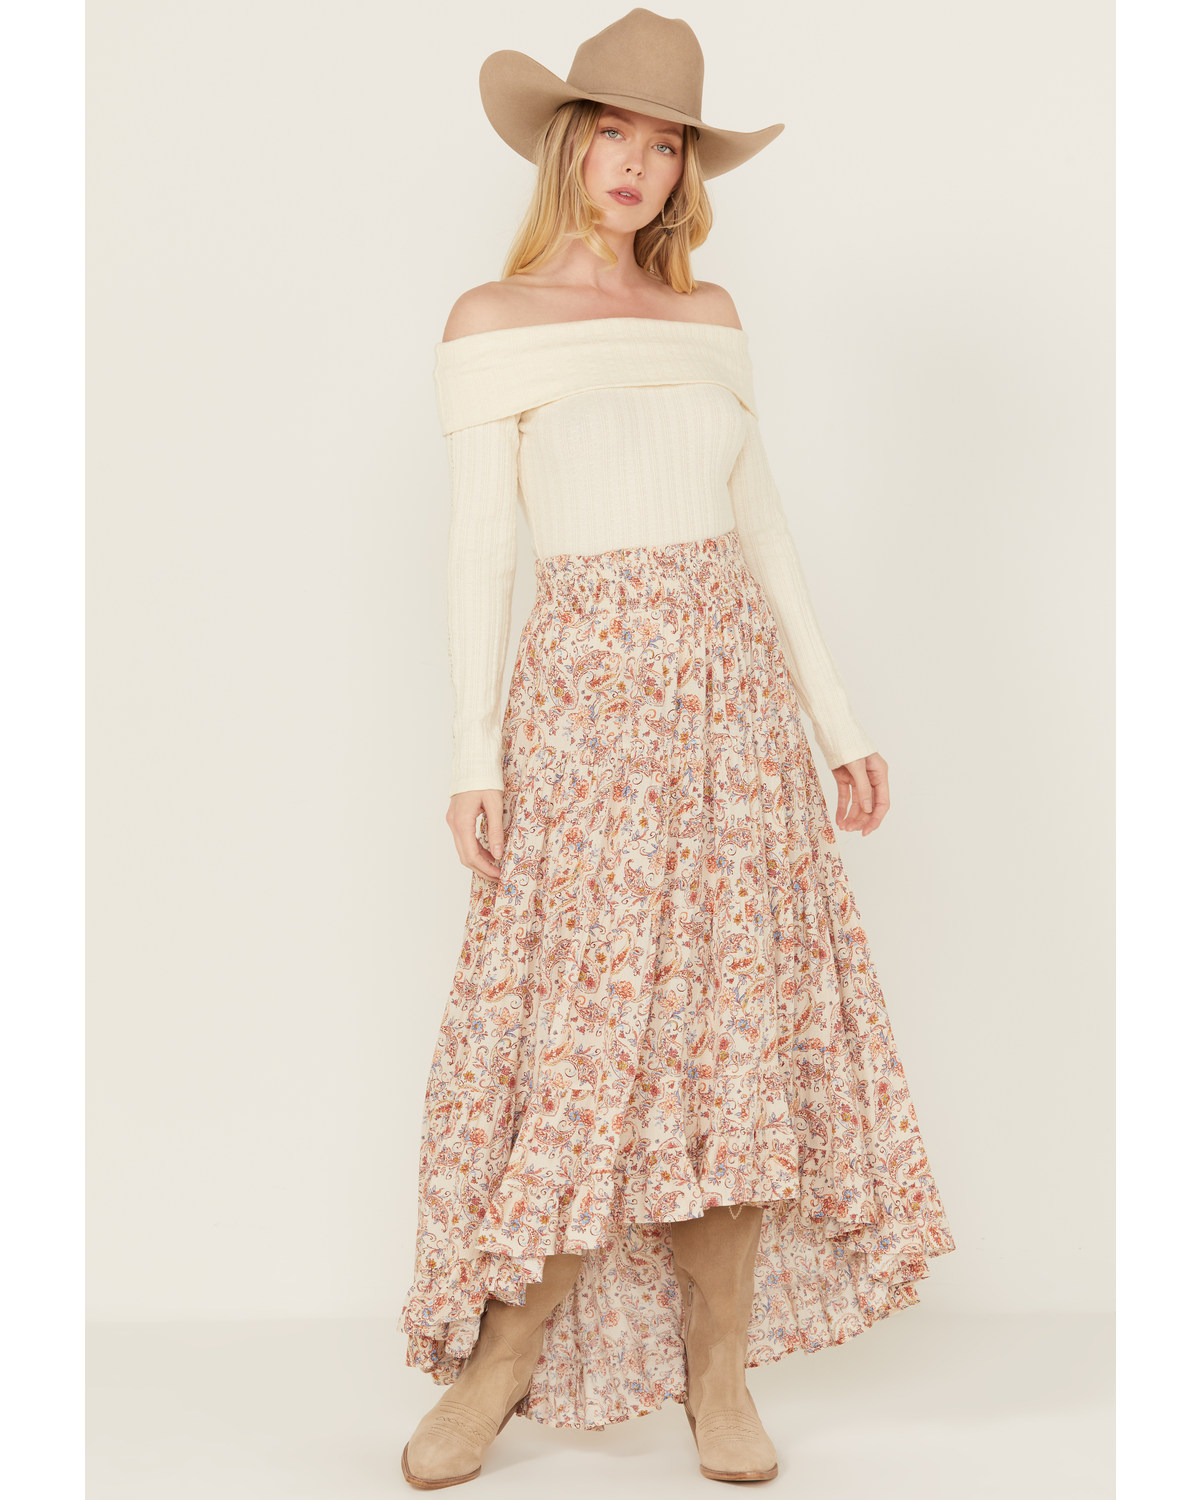 Wild Moss Women's Floral Print Skirt